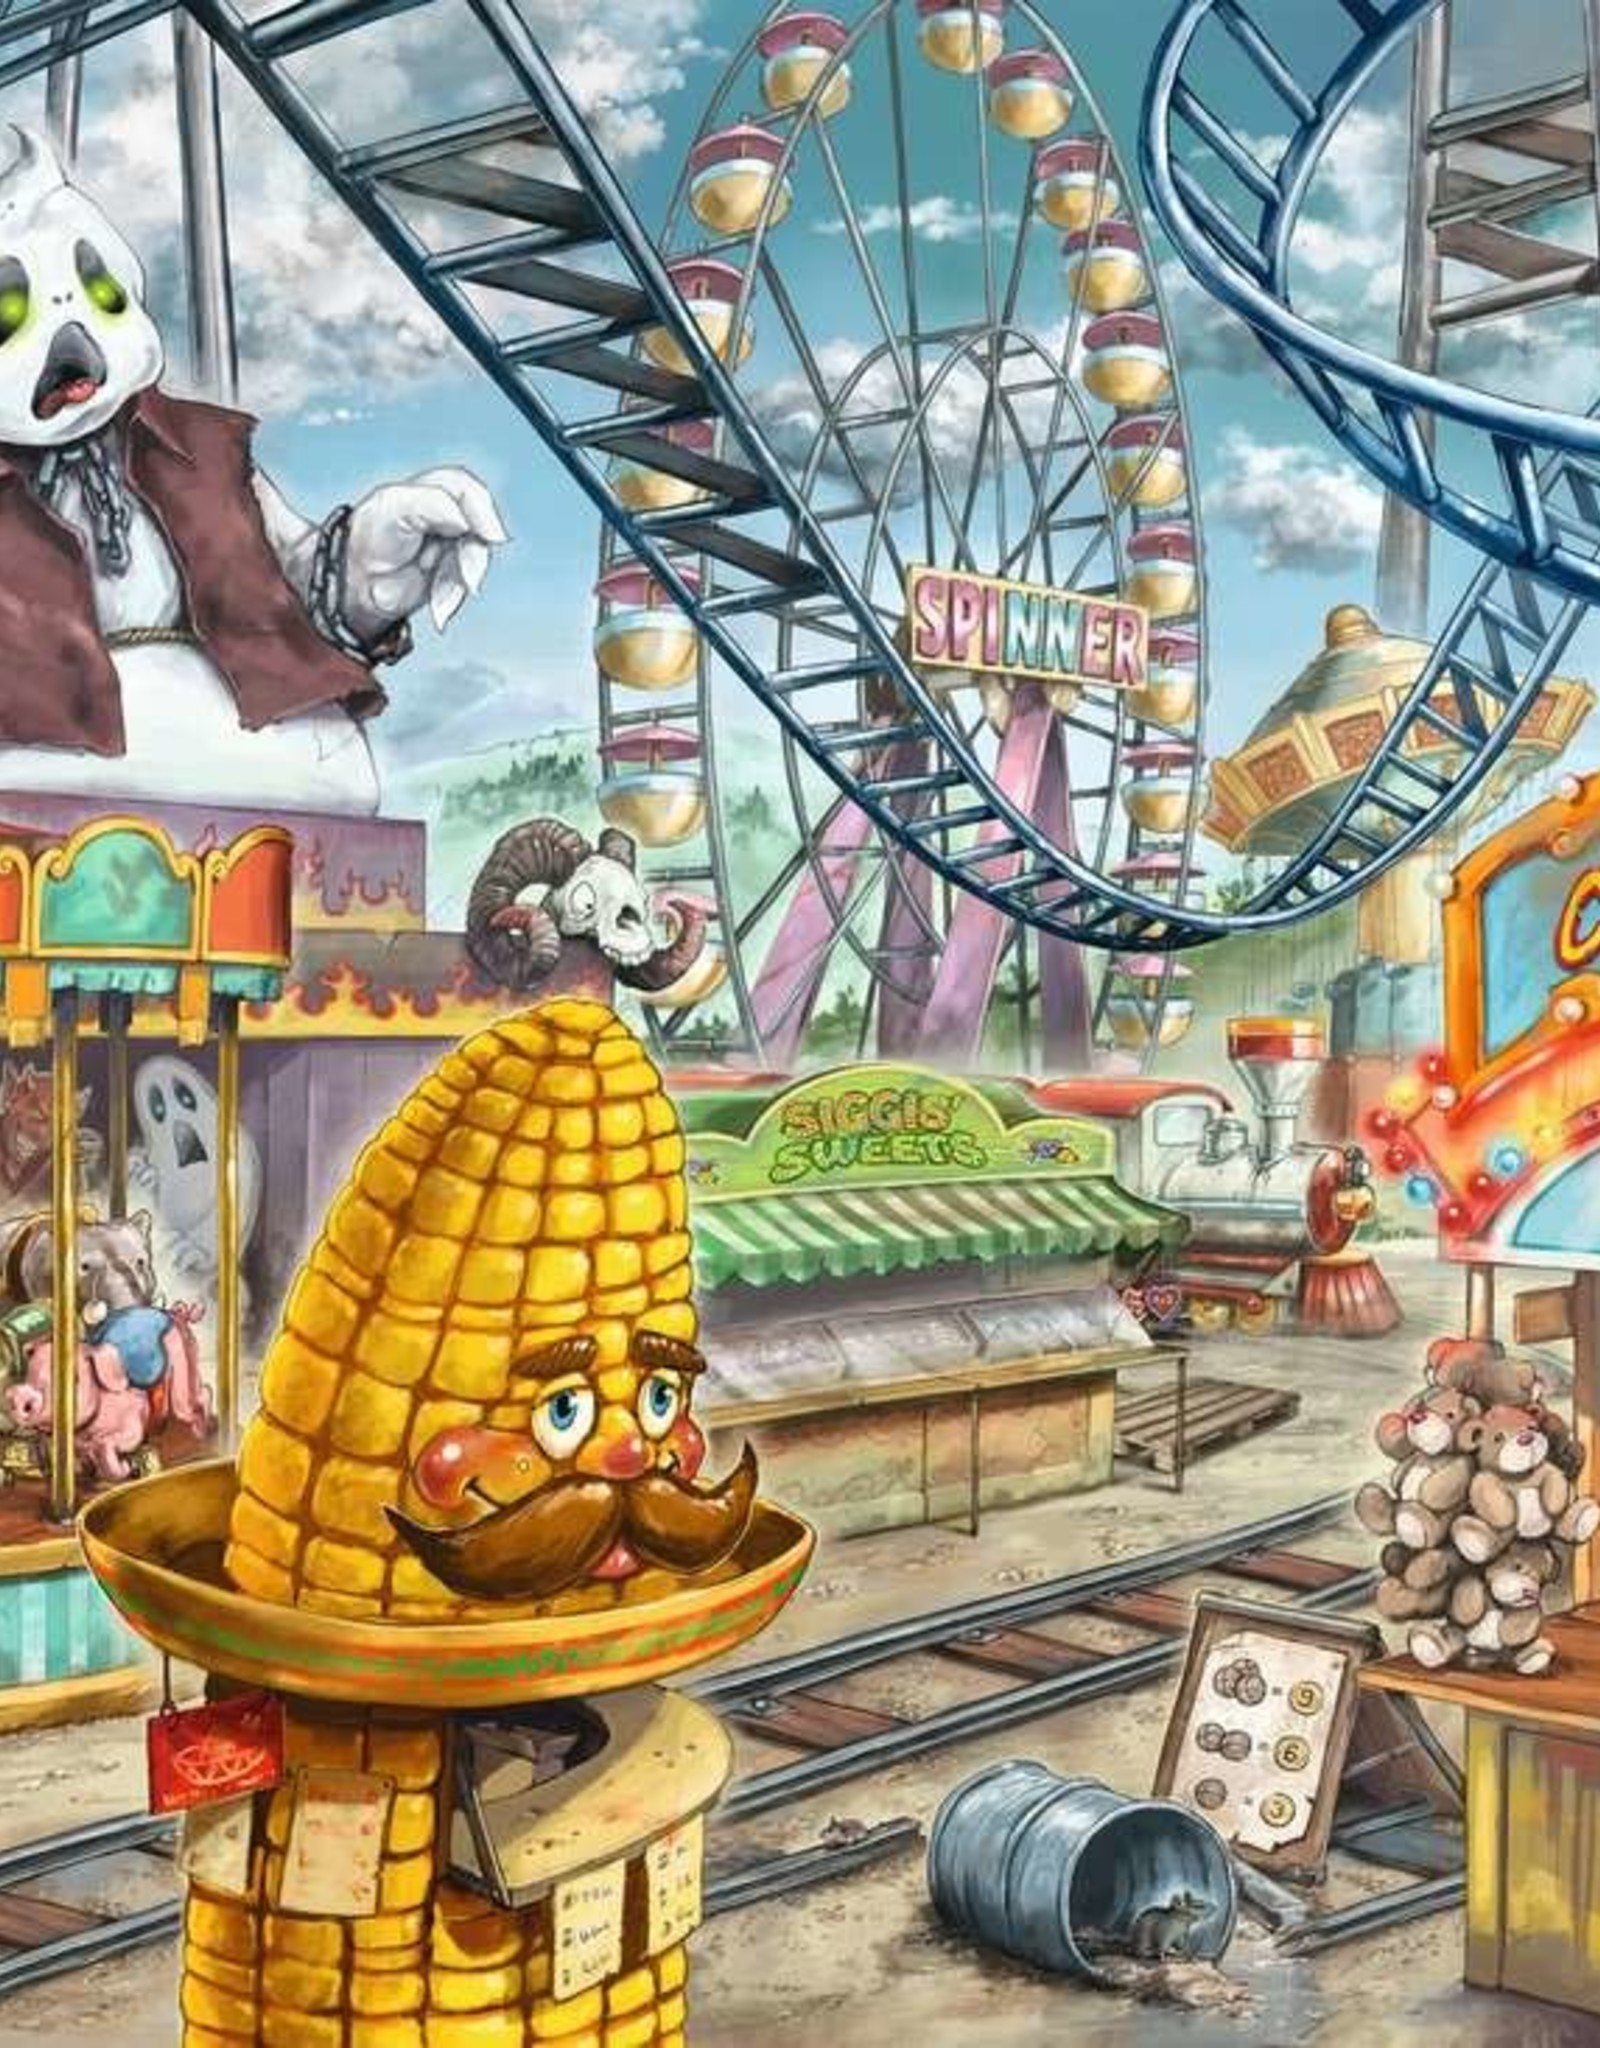 ESC KIDS Amusement Park, Children's Puzzles